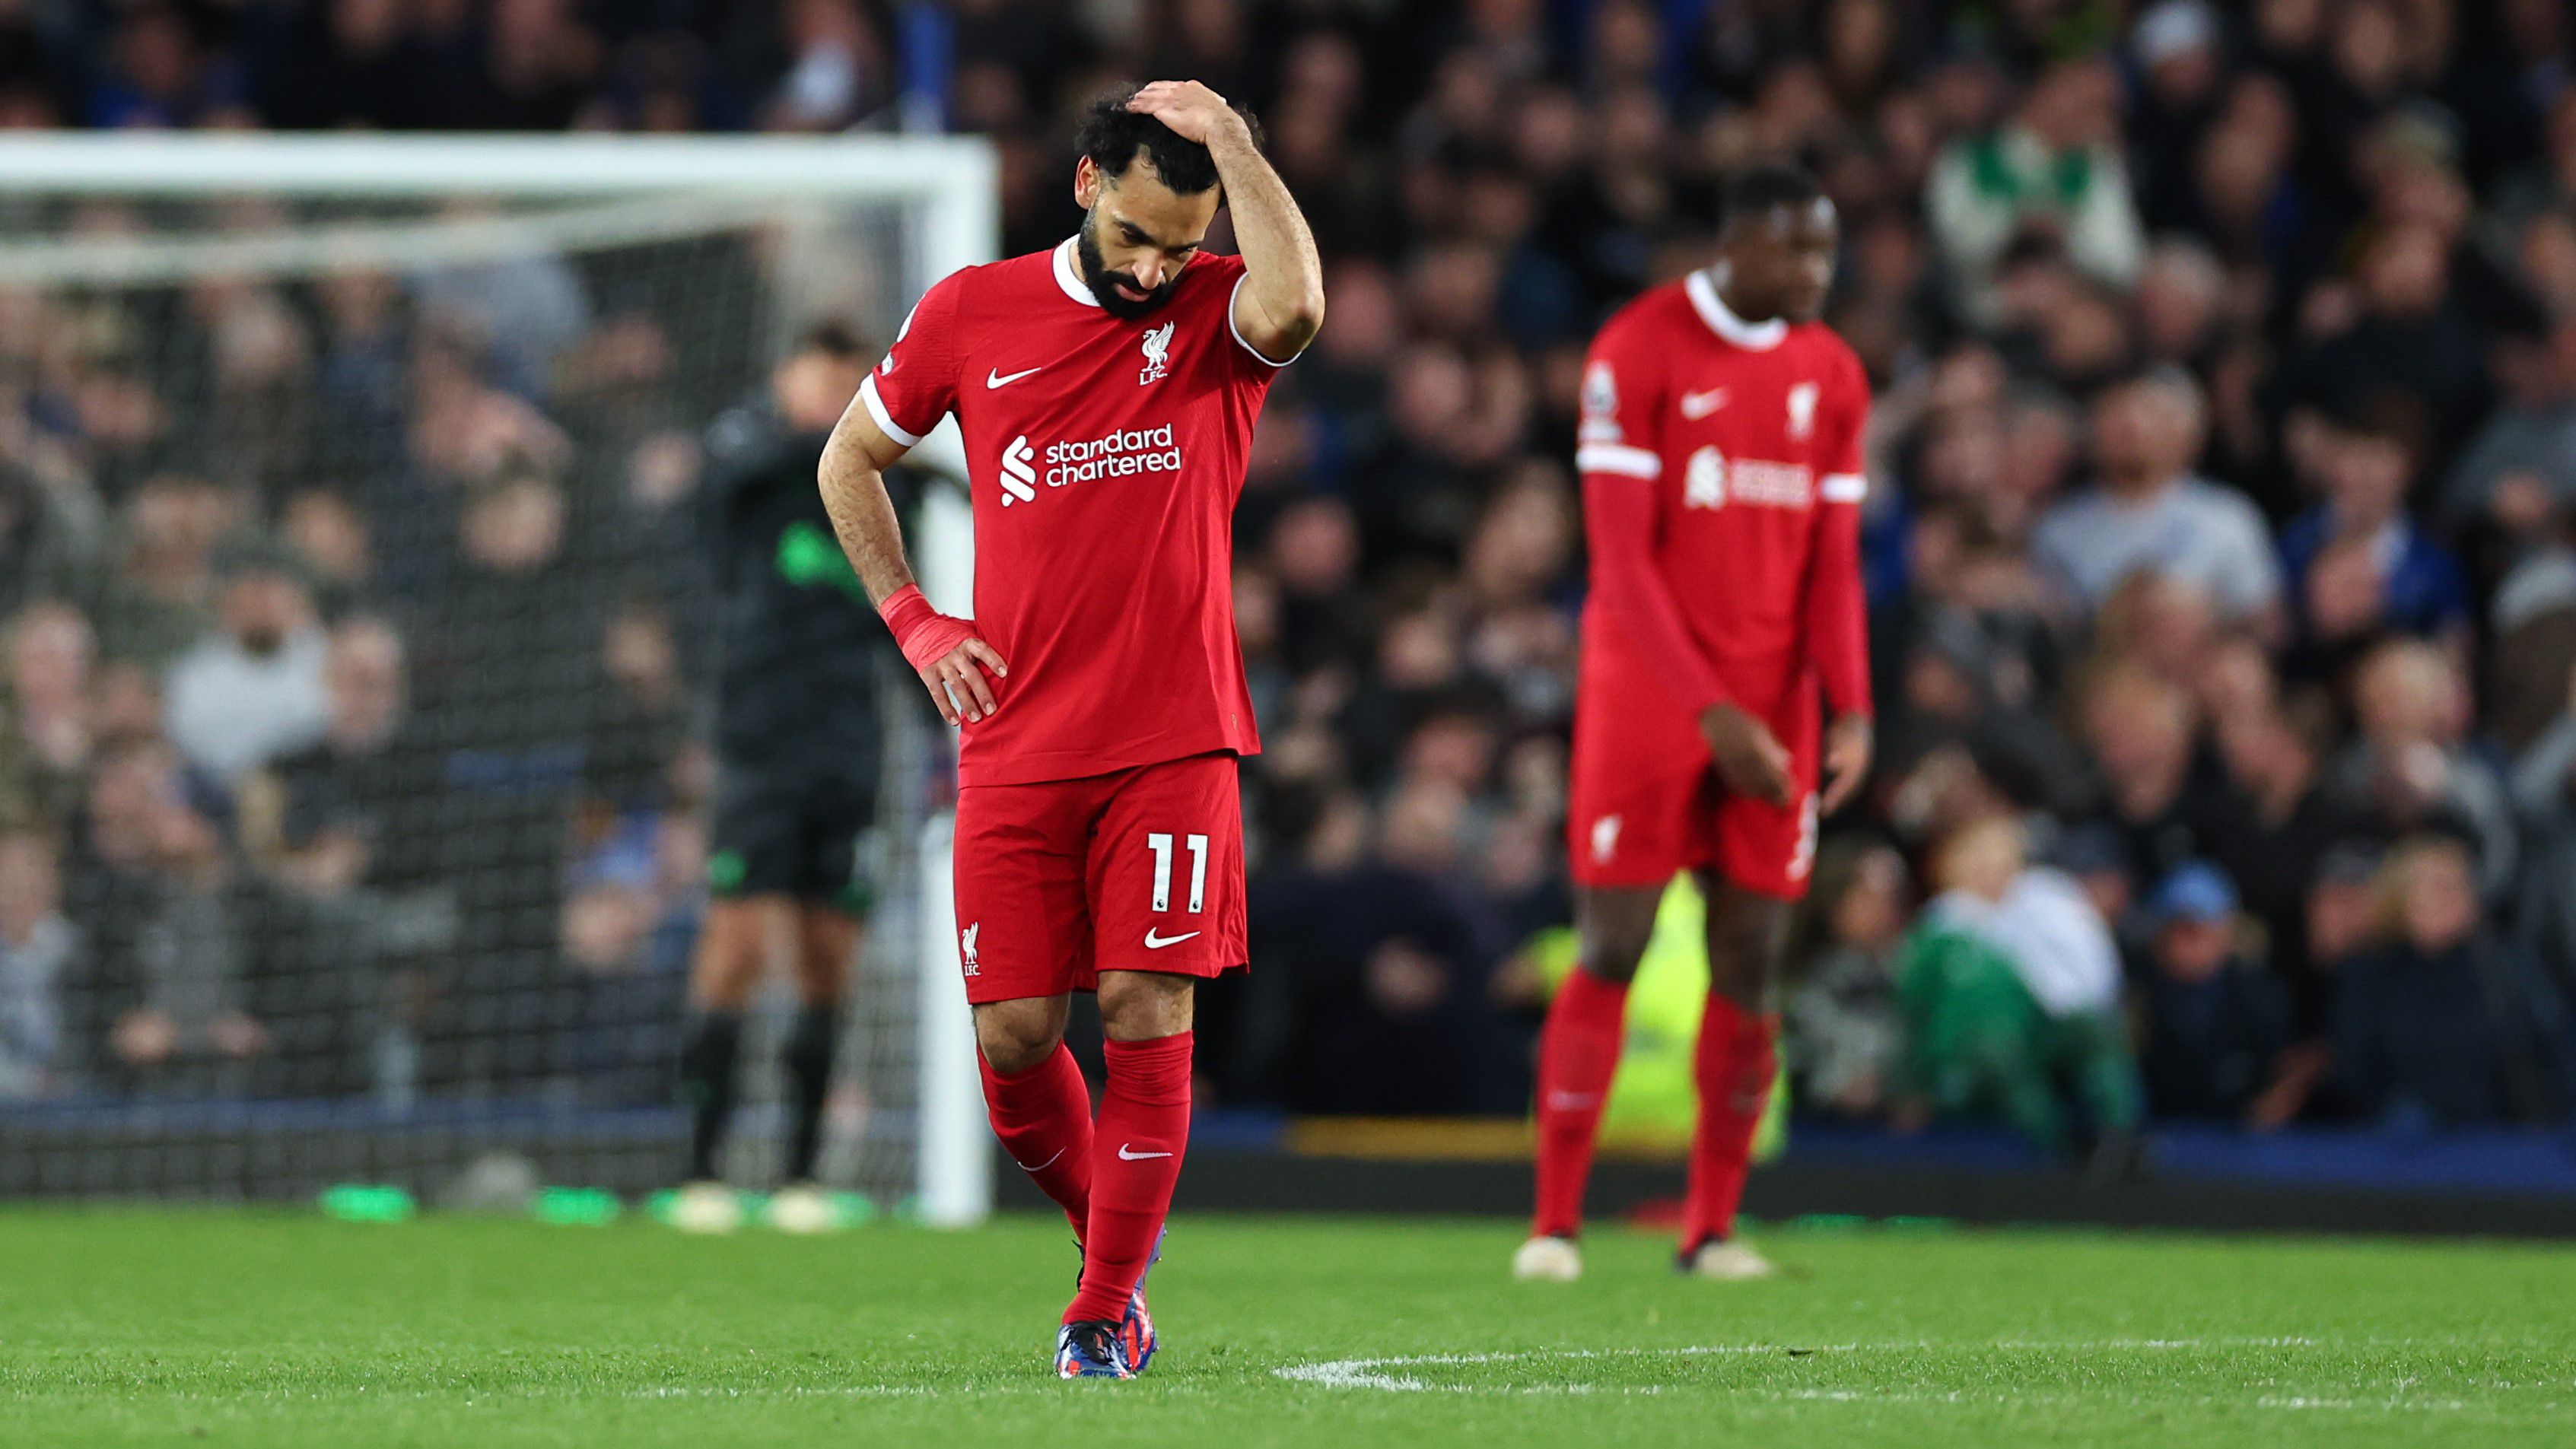 Alighanem Mohamed Szalah is érezte: a Liverpool a három pontnál is többet veszített az Everton otthonában szerda este – vélhetően elúszott az esély a bajnoki címre